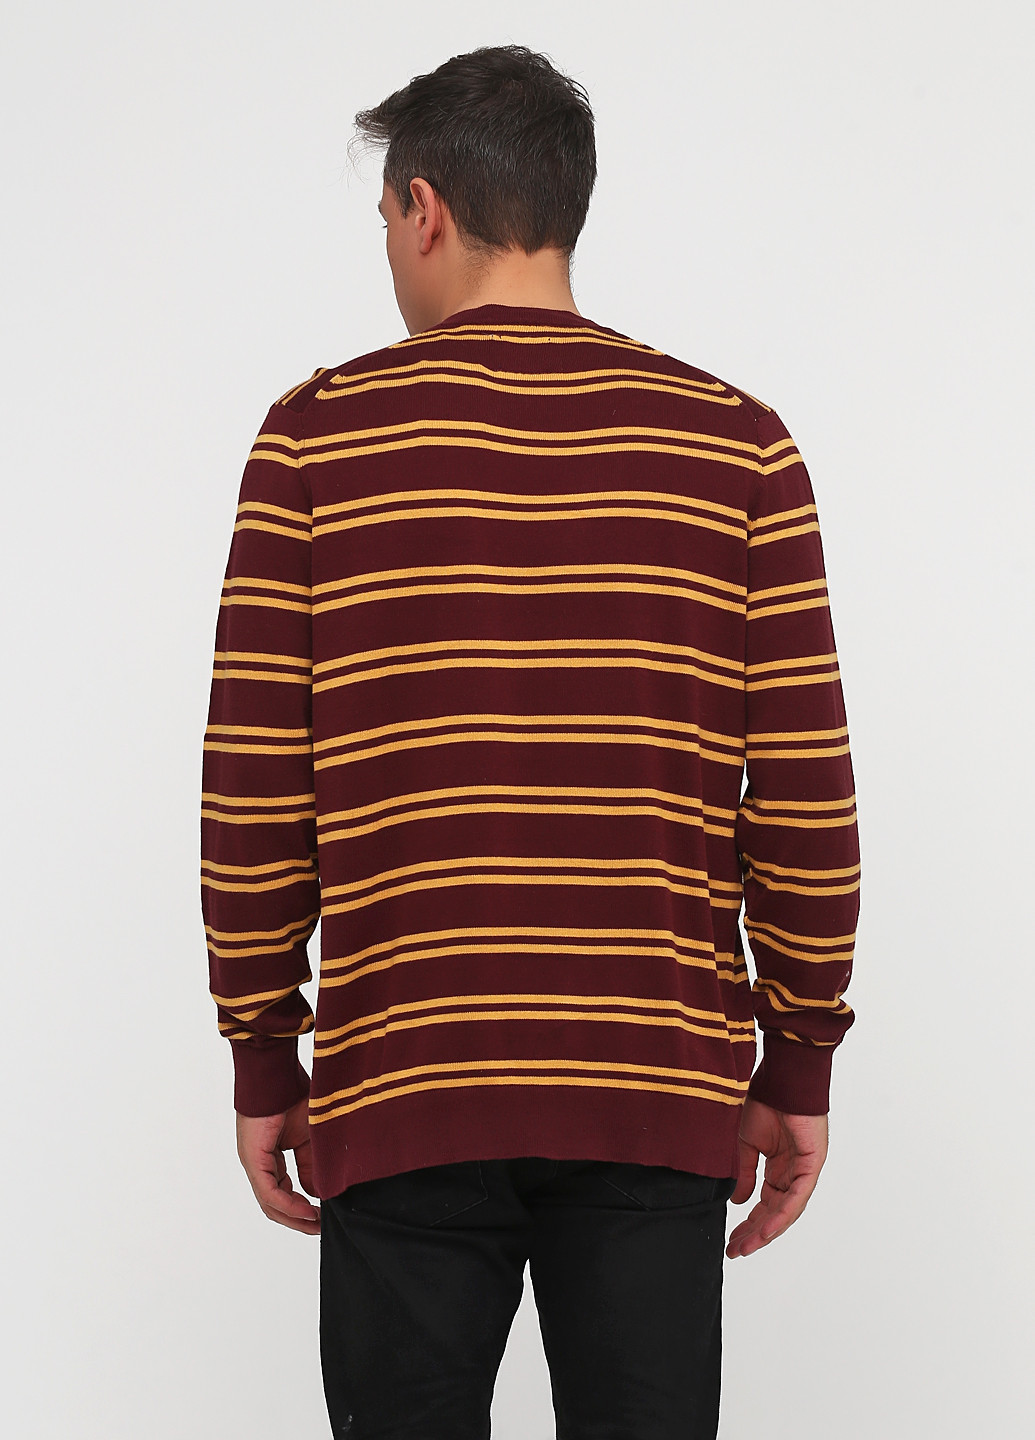 Бордовый демисезонный пуловер пуловер CHD